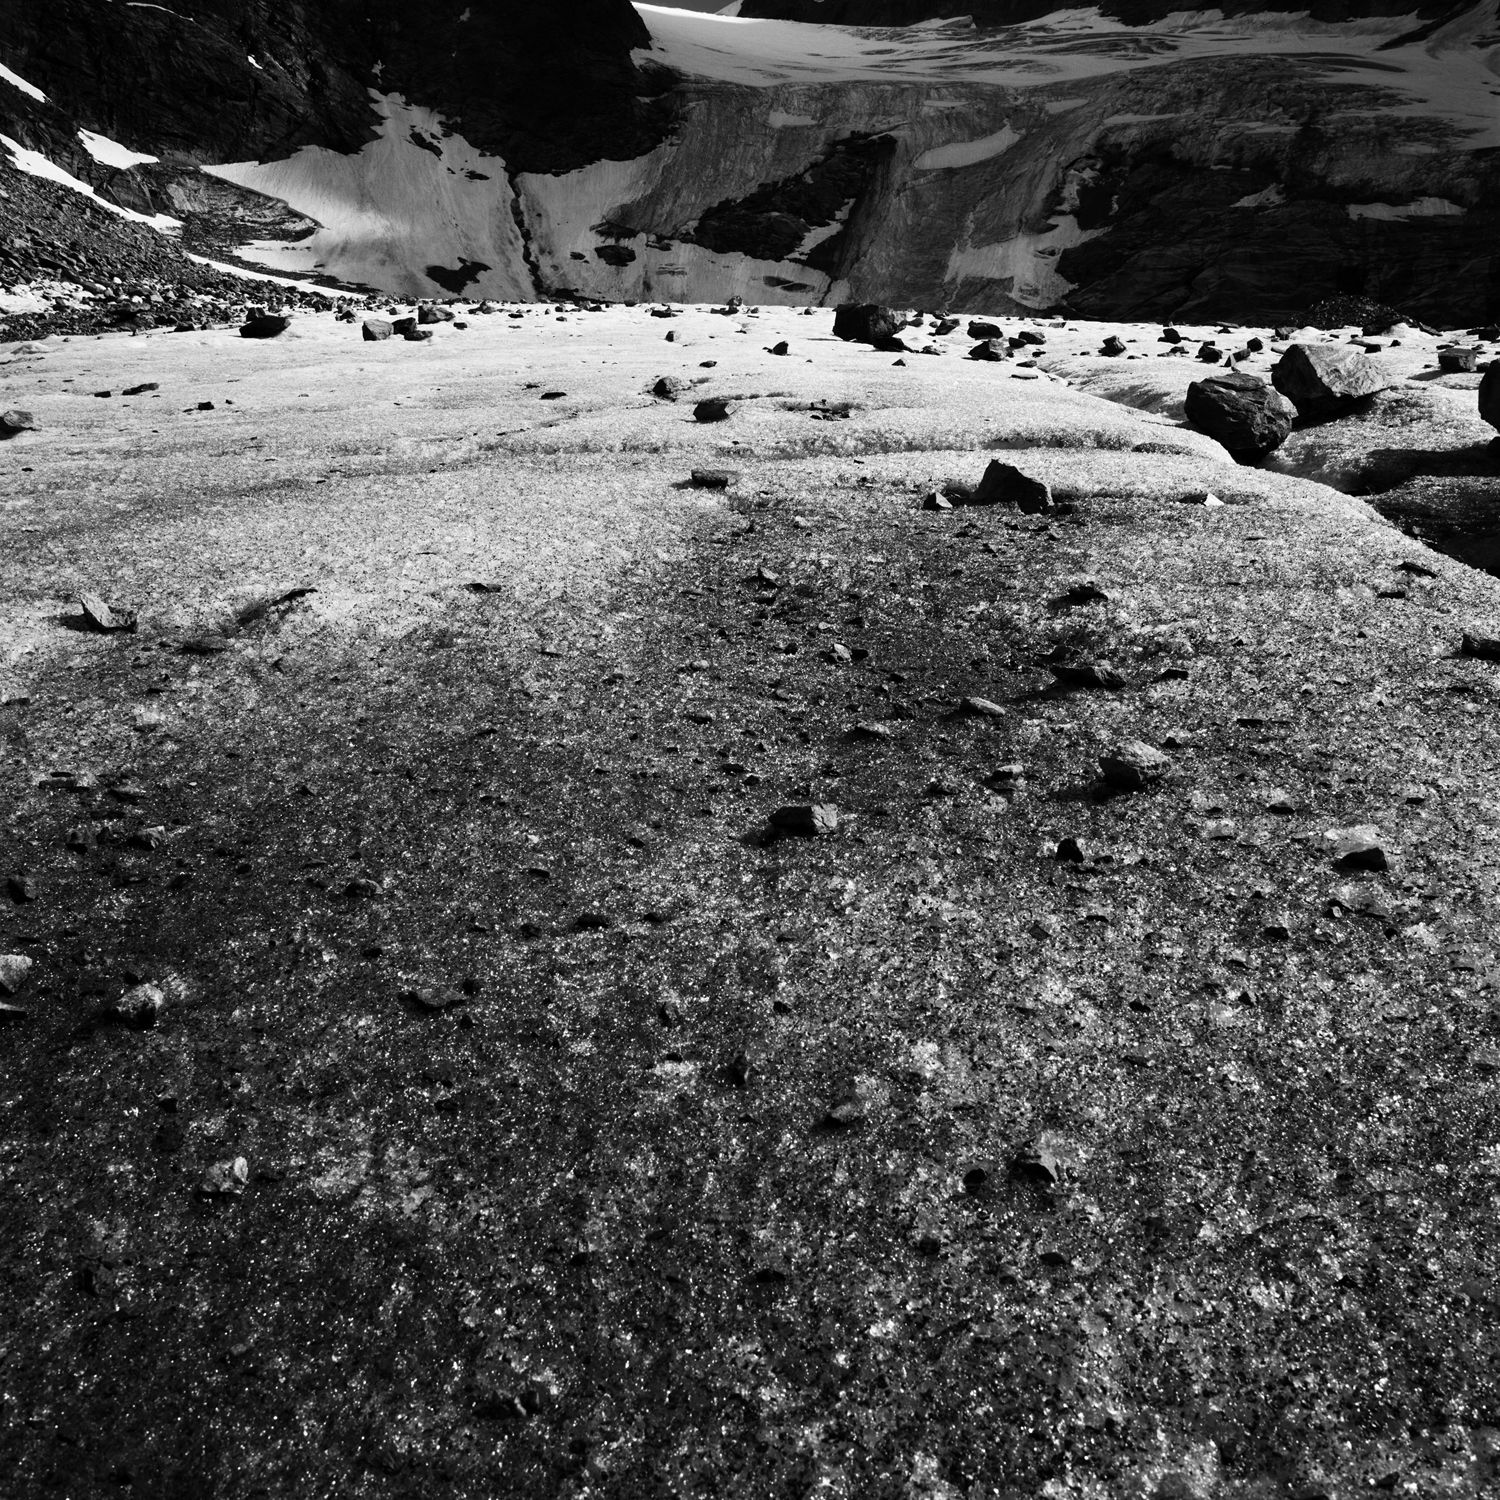 © Hélène Binet 'Formations 2, Graubünden Switzerland' courtesy ammann//gallery